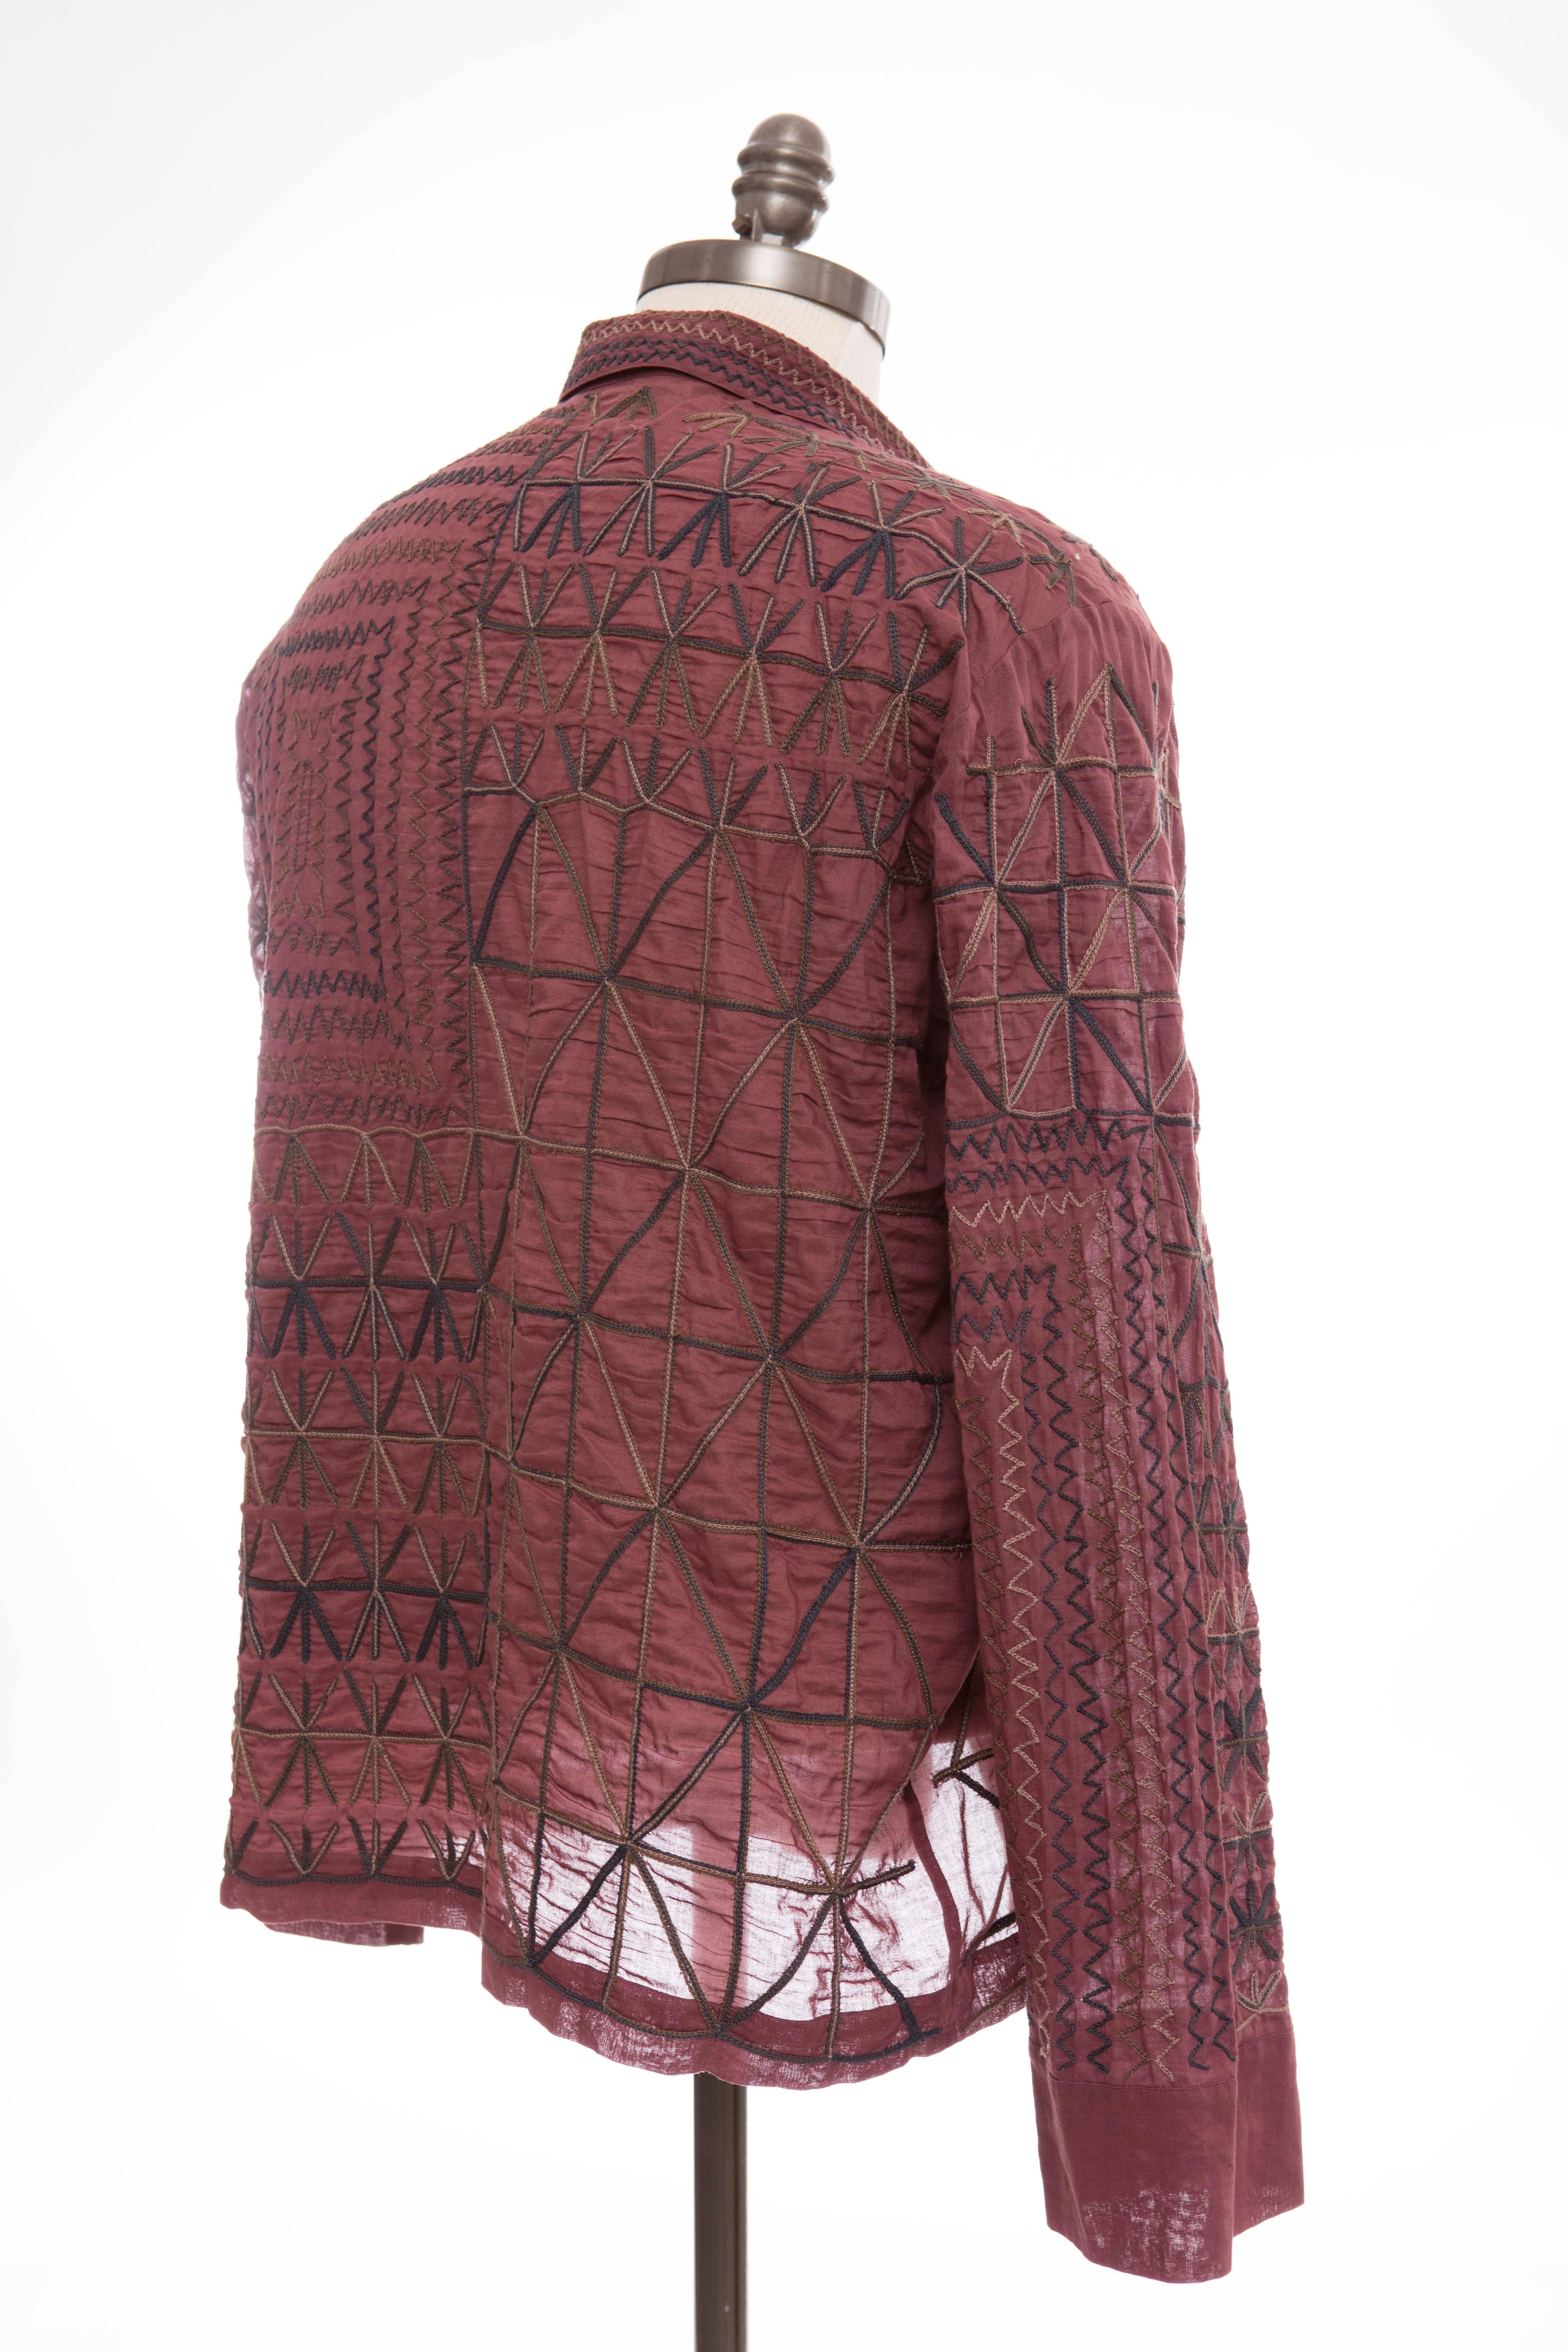 Dries Van Noten Men's Embroidered Cotton Lightweight Jacket, Spring 2015  2